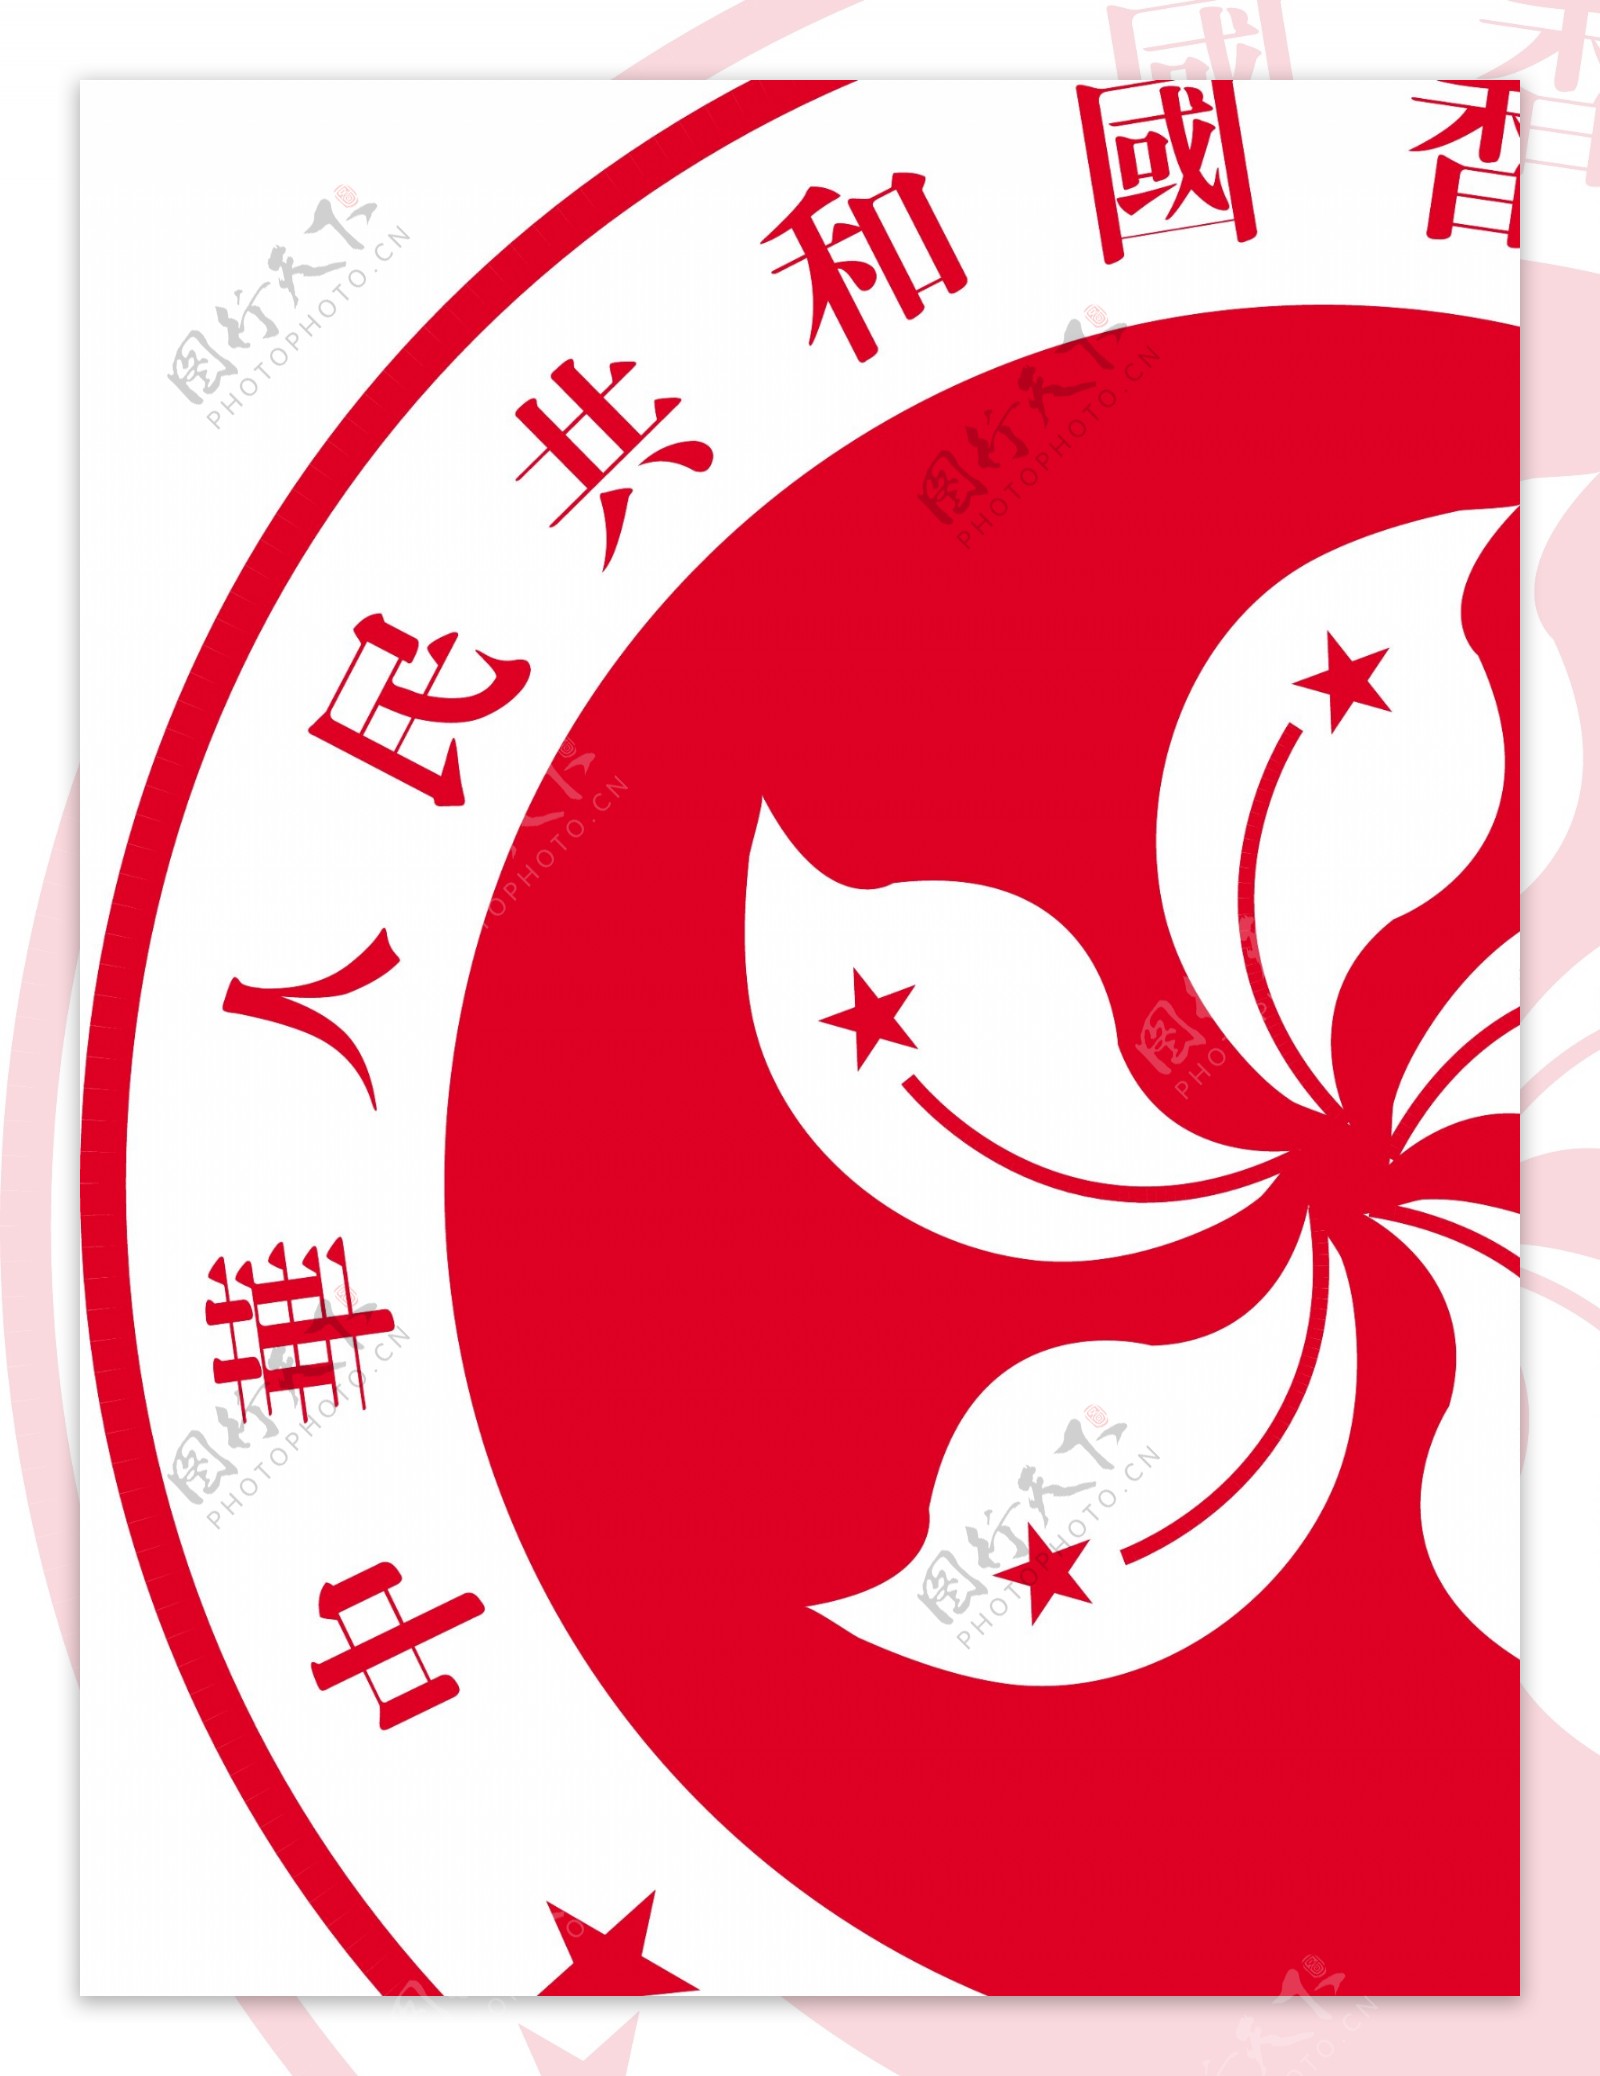 香港特别行政区区徽图片